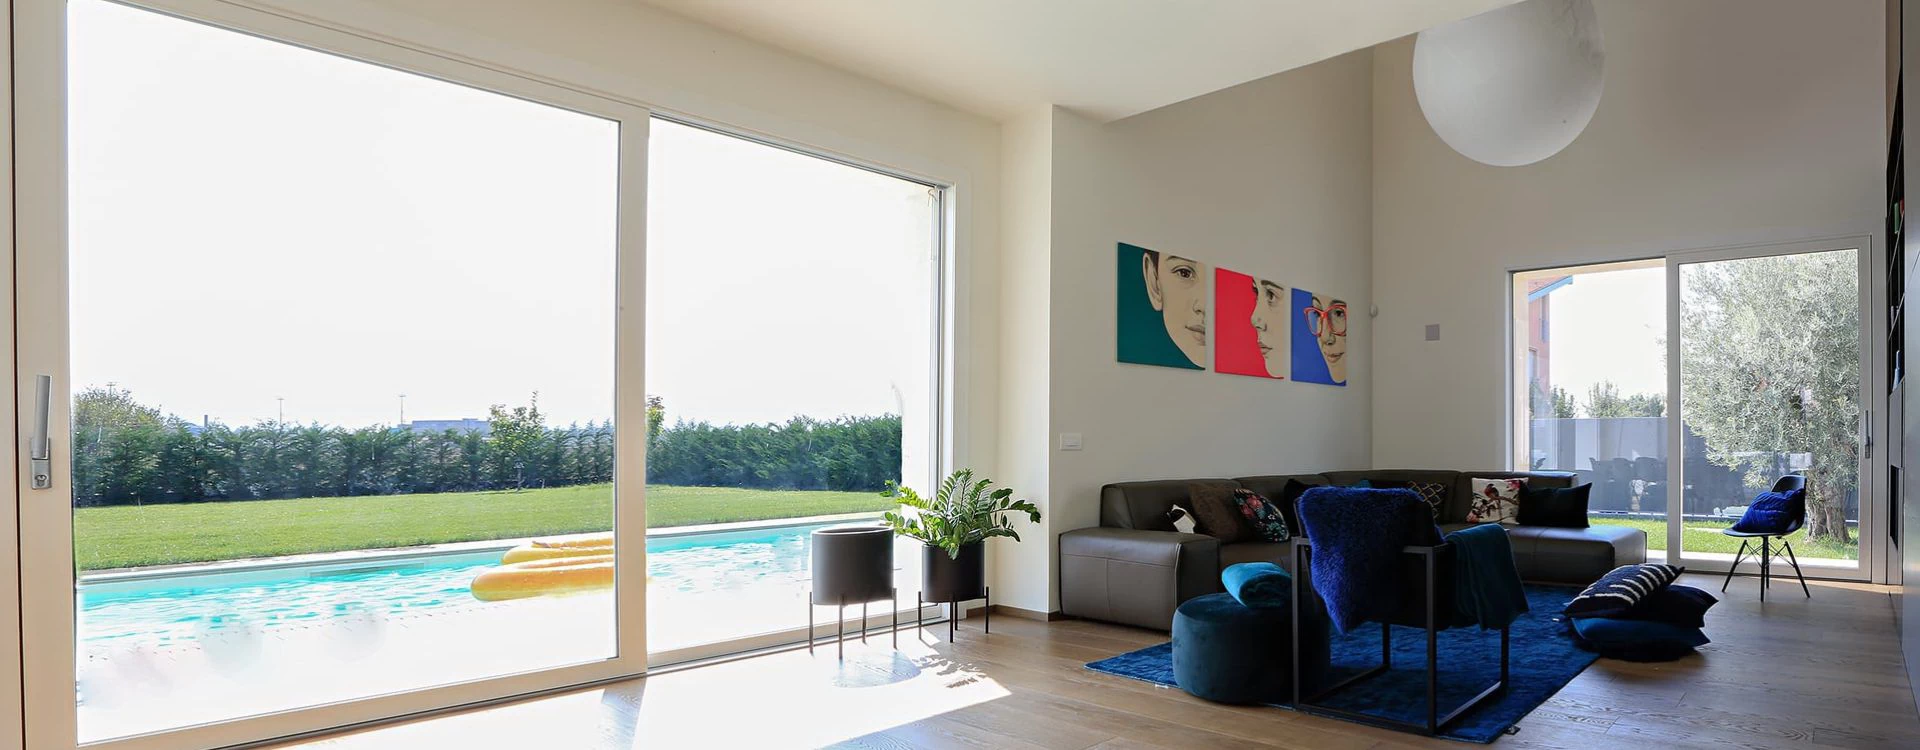 Finestre in PVC Torino - Icos per la Casa